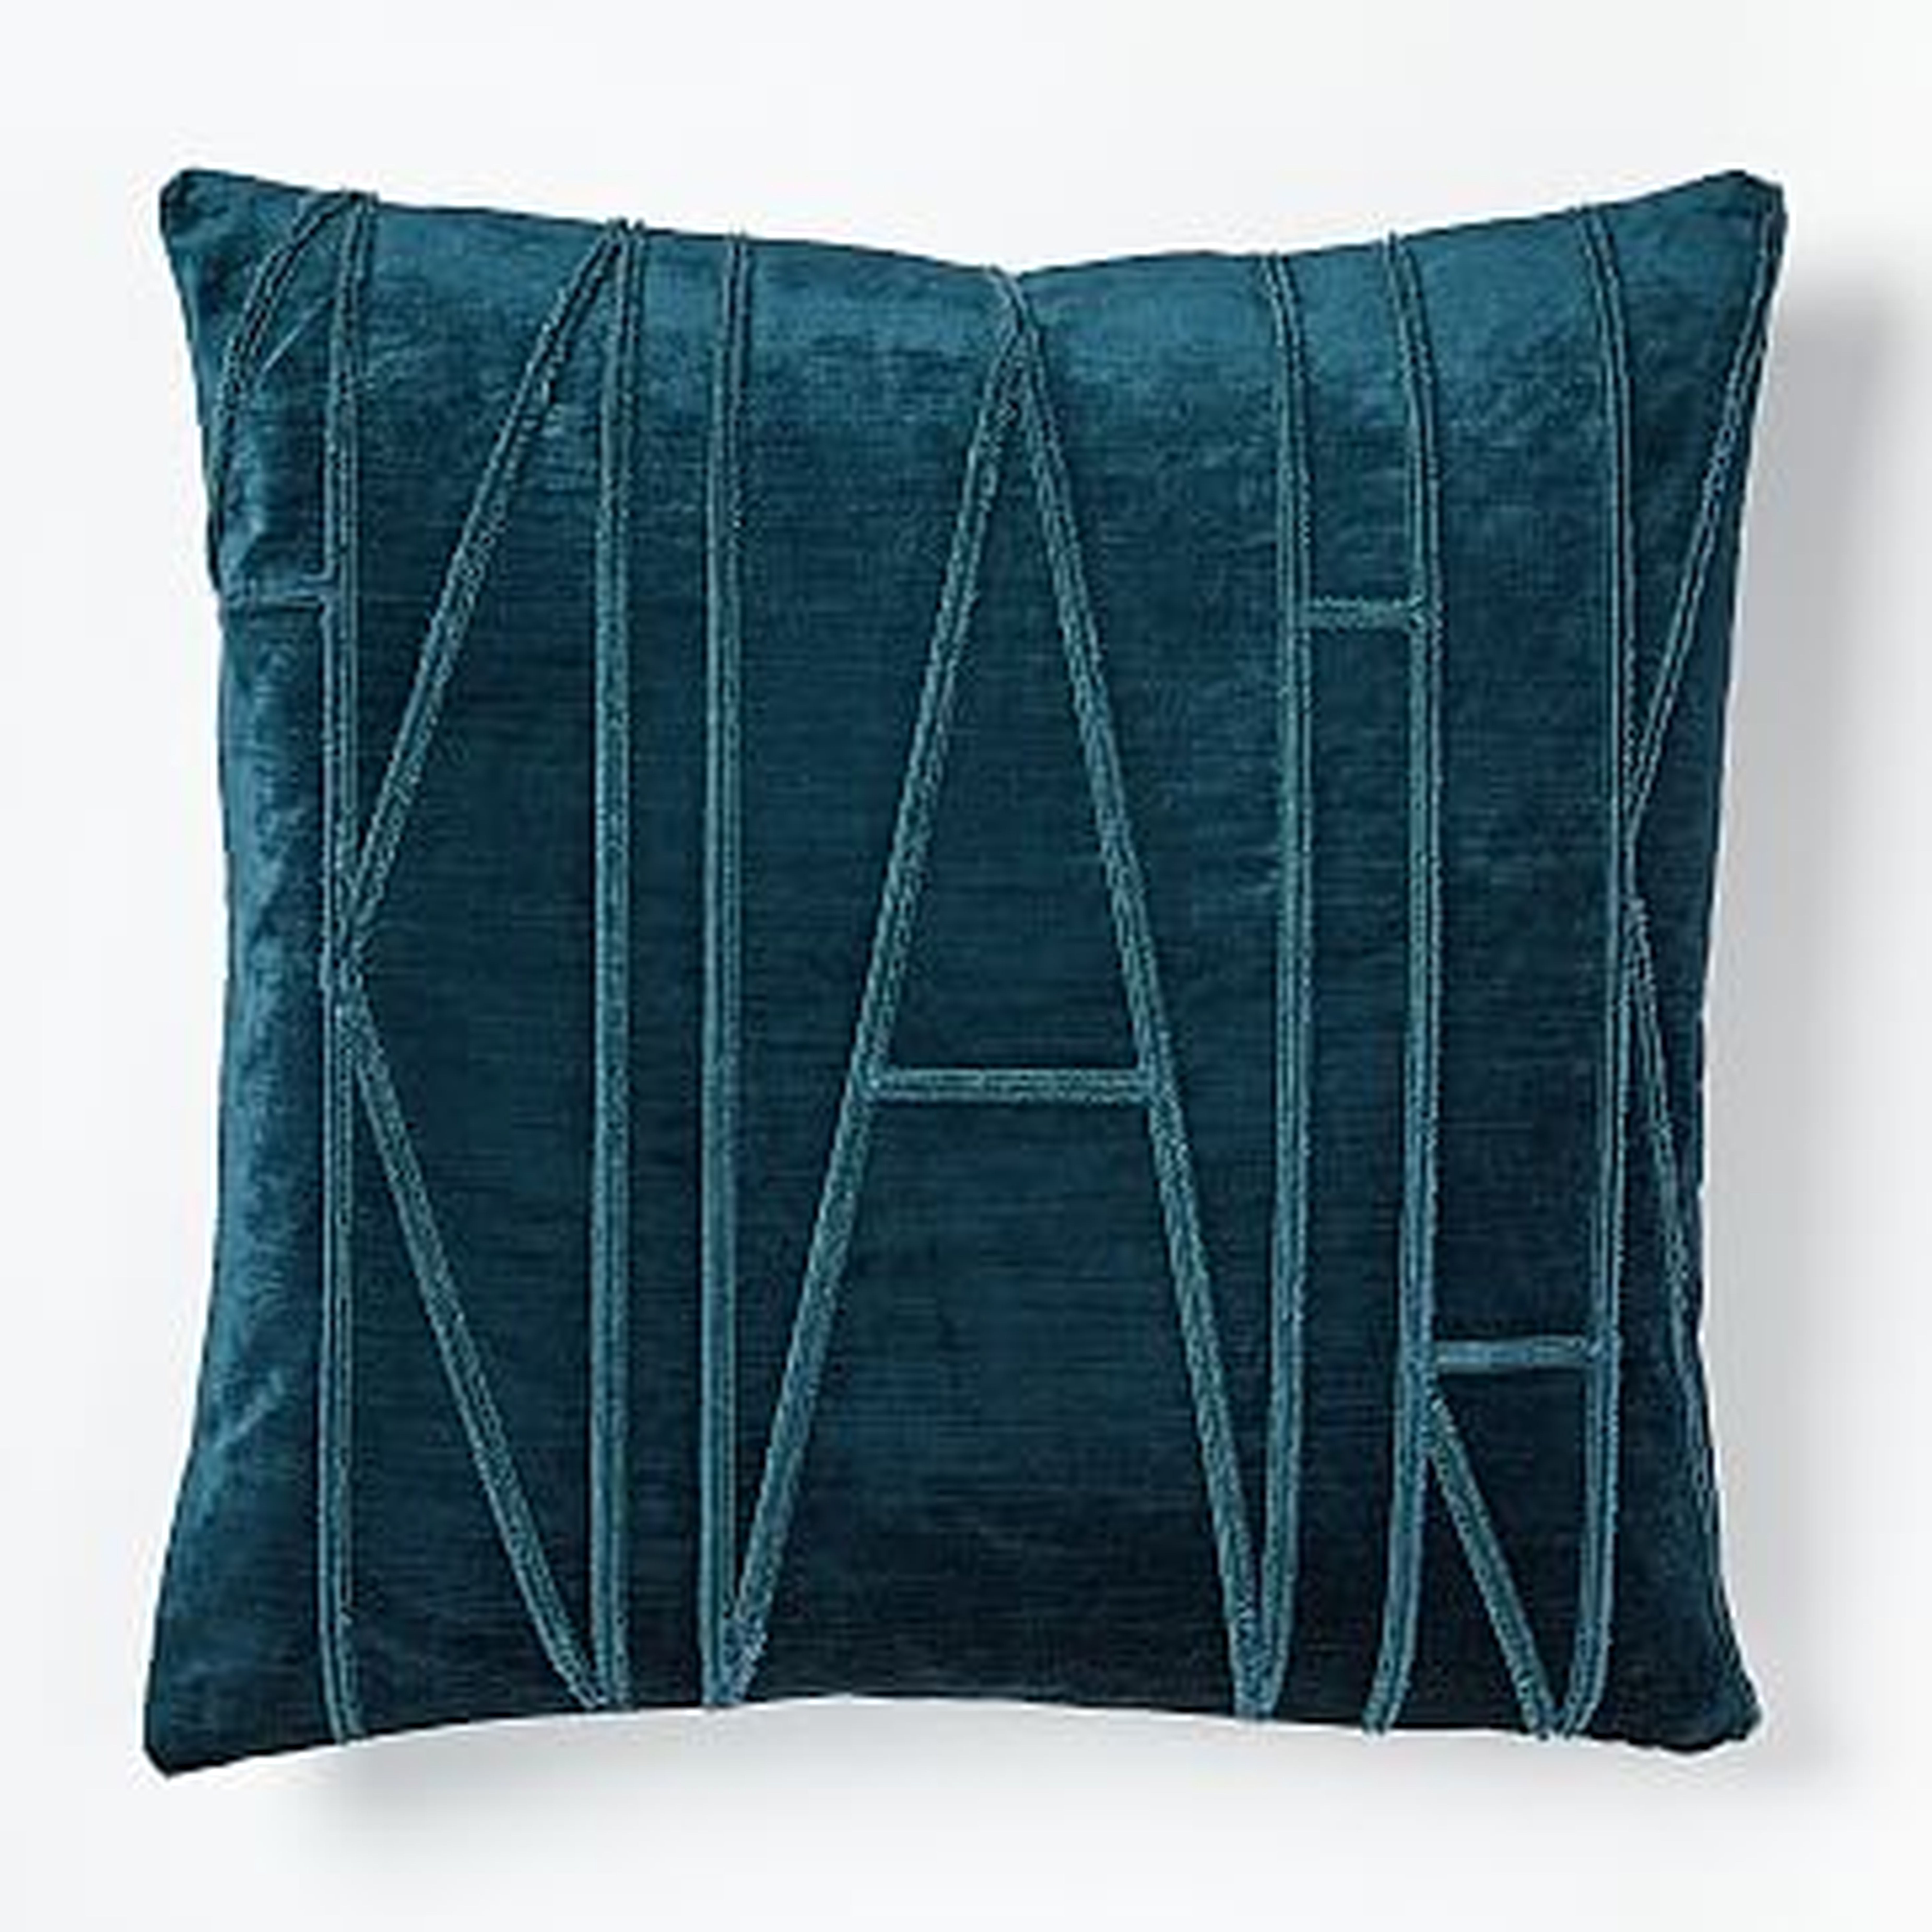 Velvet Applique Pillow Cover, 20"x20", Regal Blue - West Elm